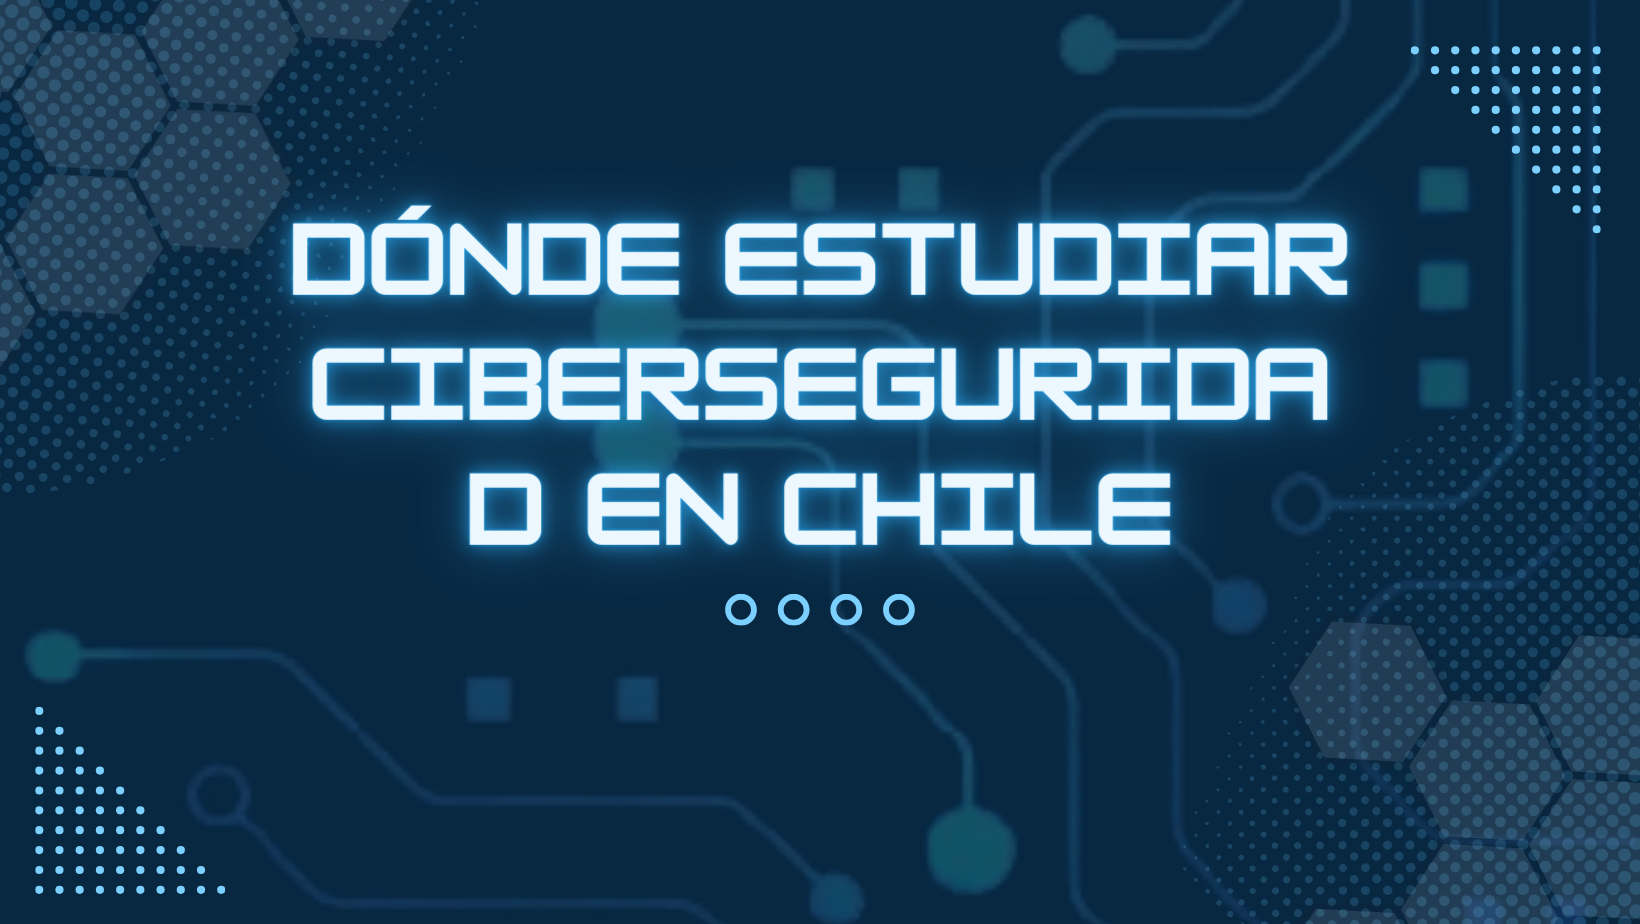 Dónde estudiar ciberseguridad en Chile